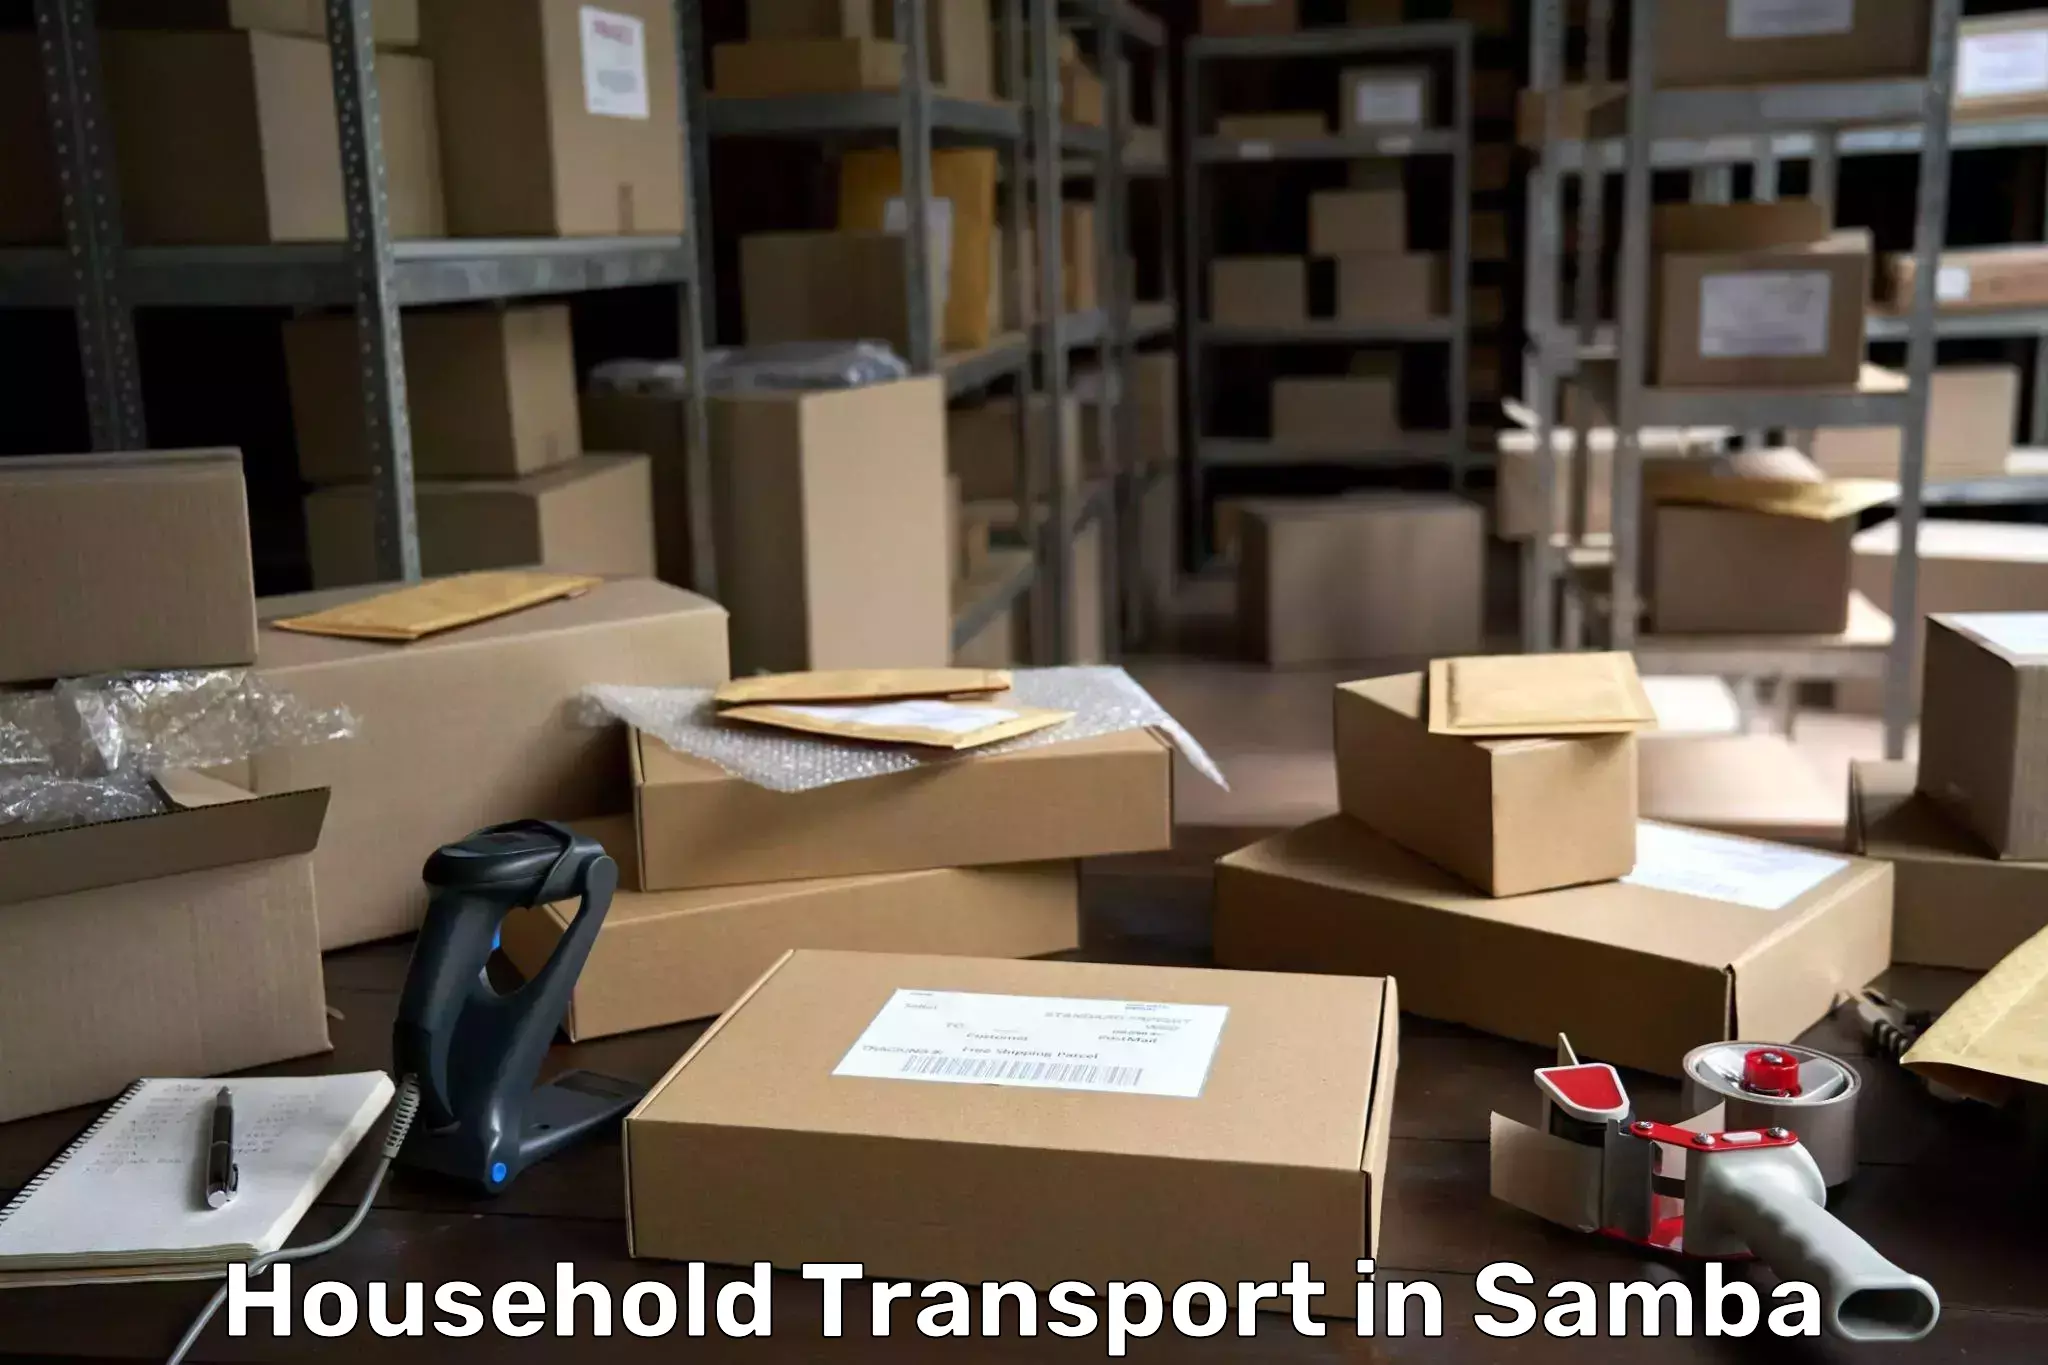 Household goods transport in Samba